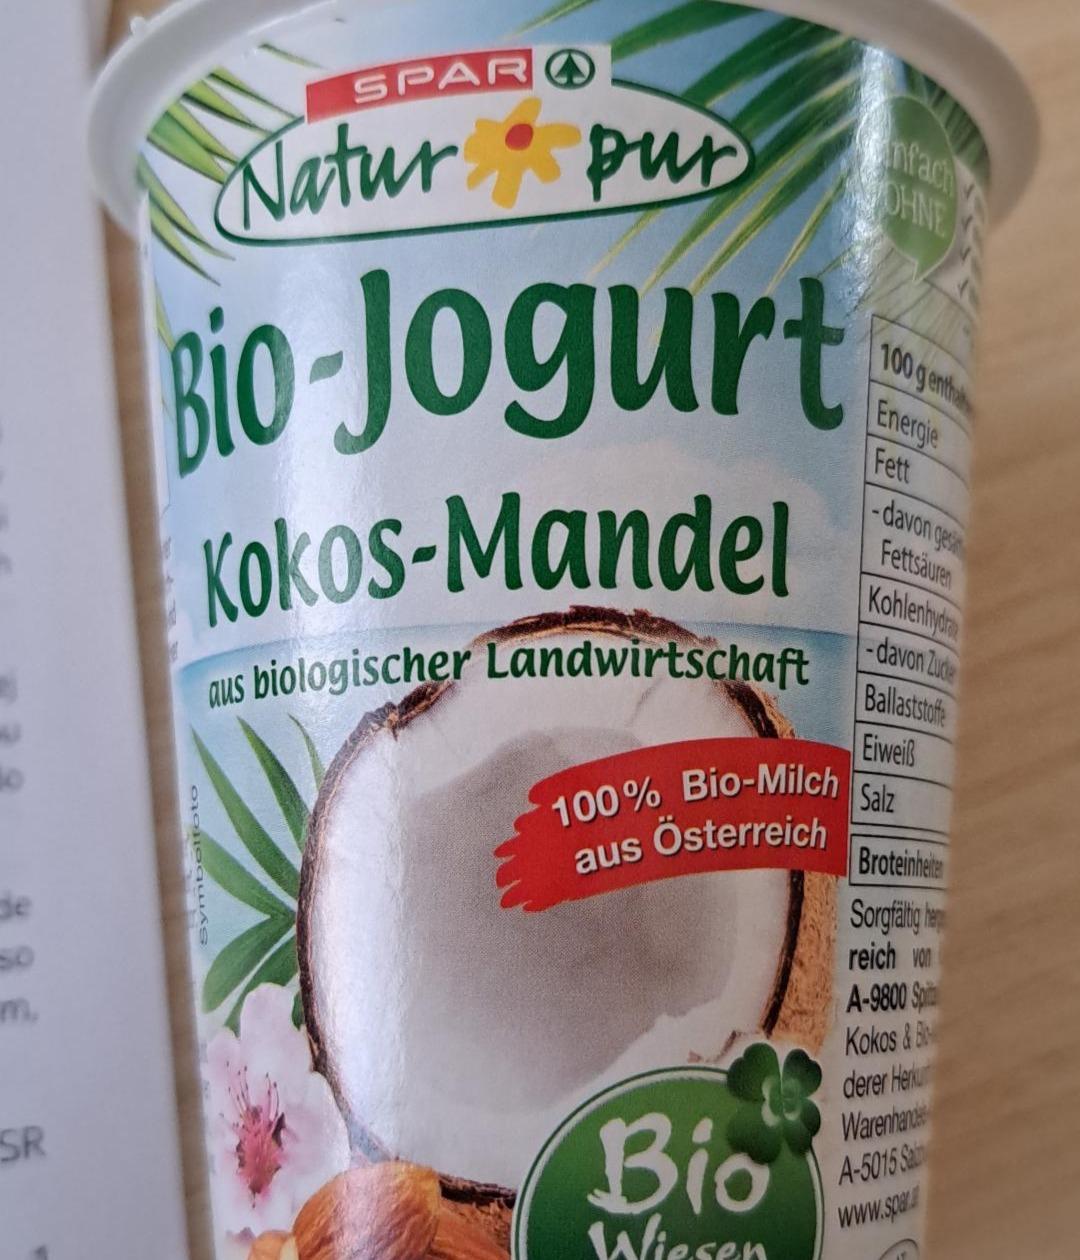 Fotografie - Bio - Jogurt Kokos - Mandel Spar Natur pur